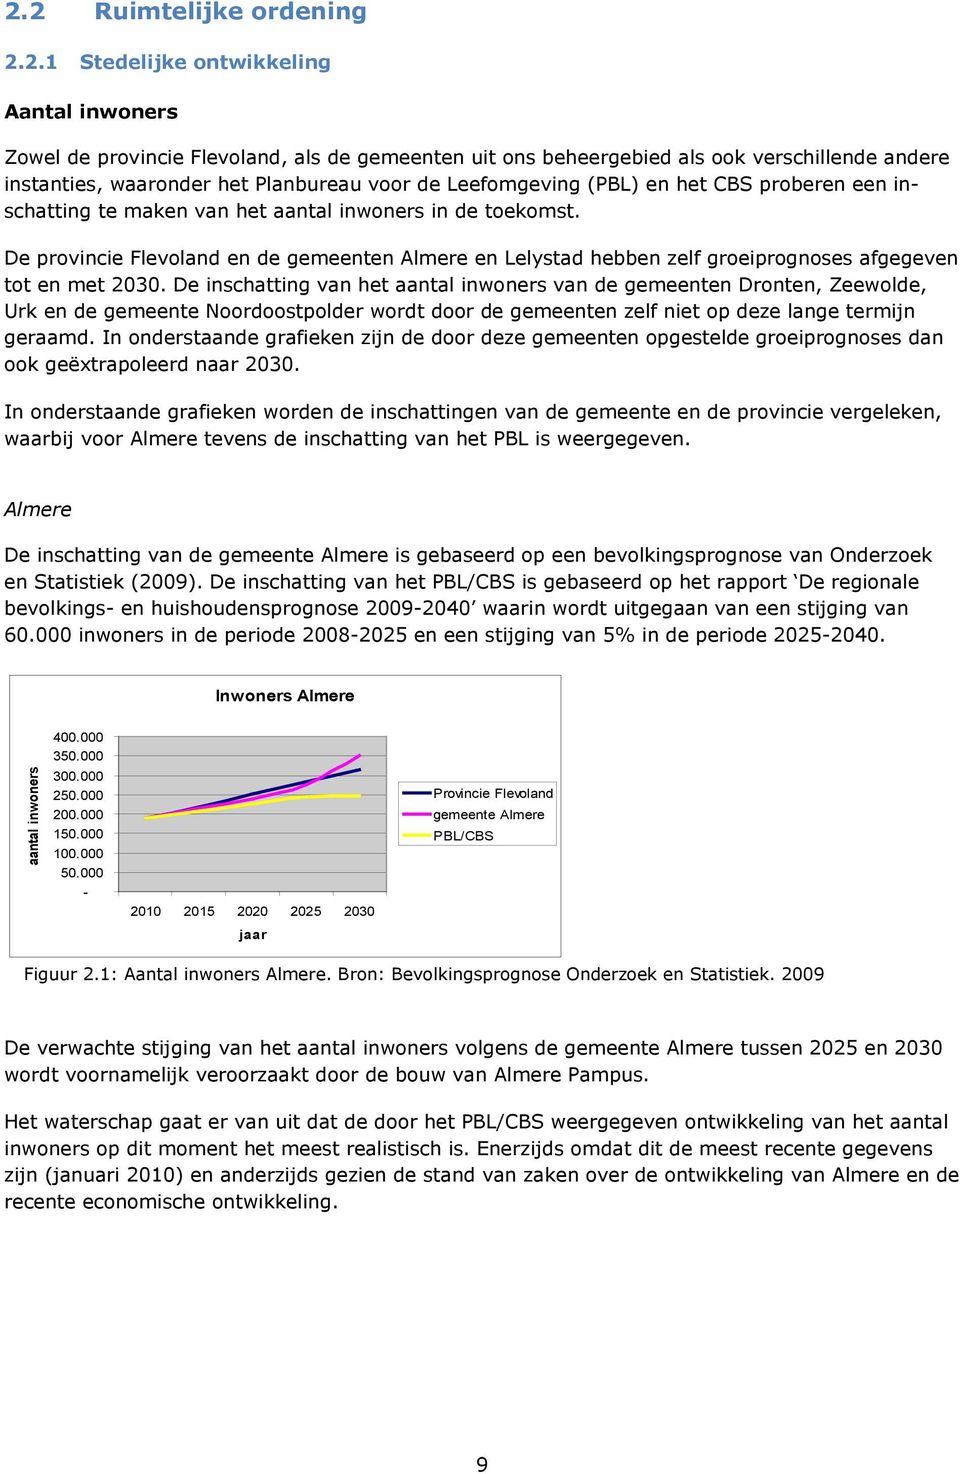 De provincie Flevoland en de gemeenten Almere en Lelystad hebben zelf groeiprognoses afgegeven tot en met 2030.